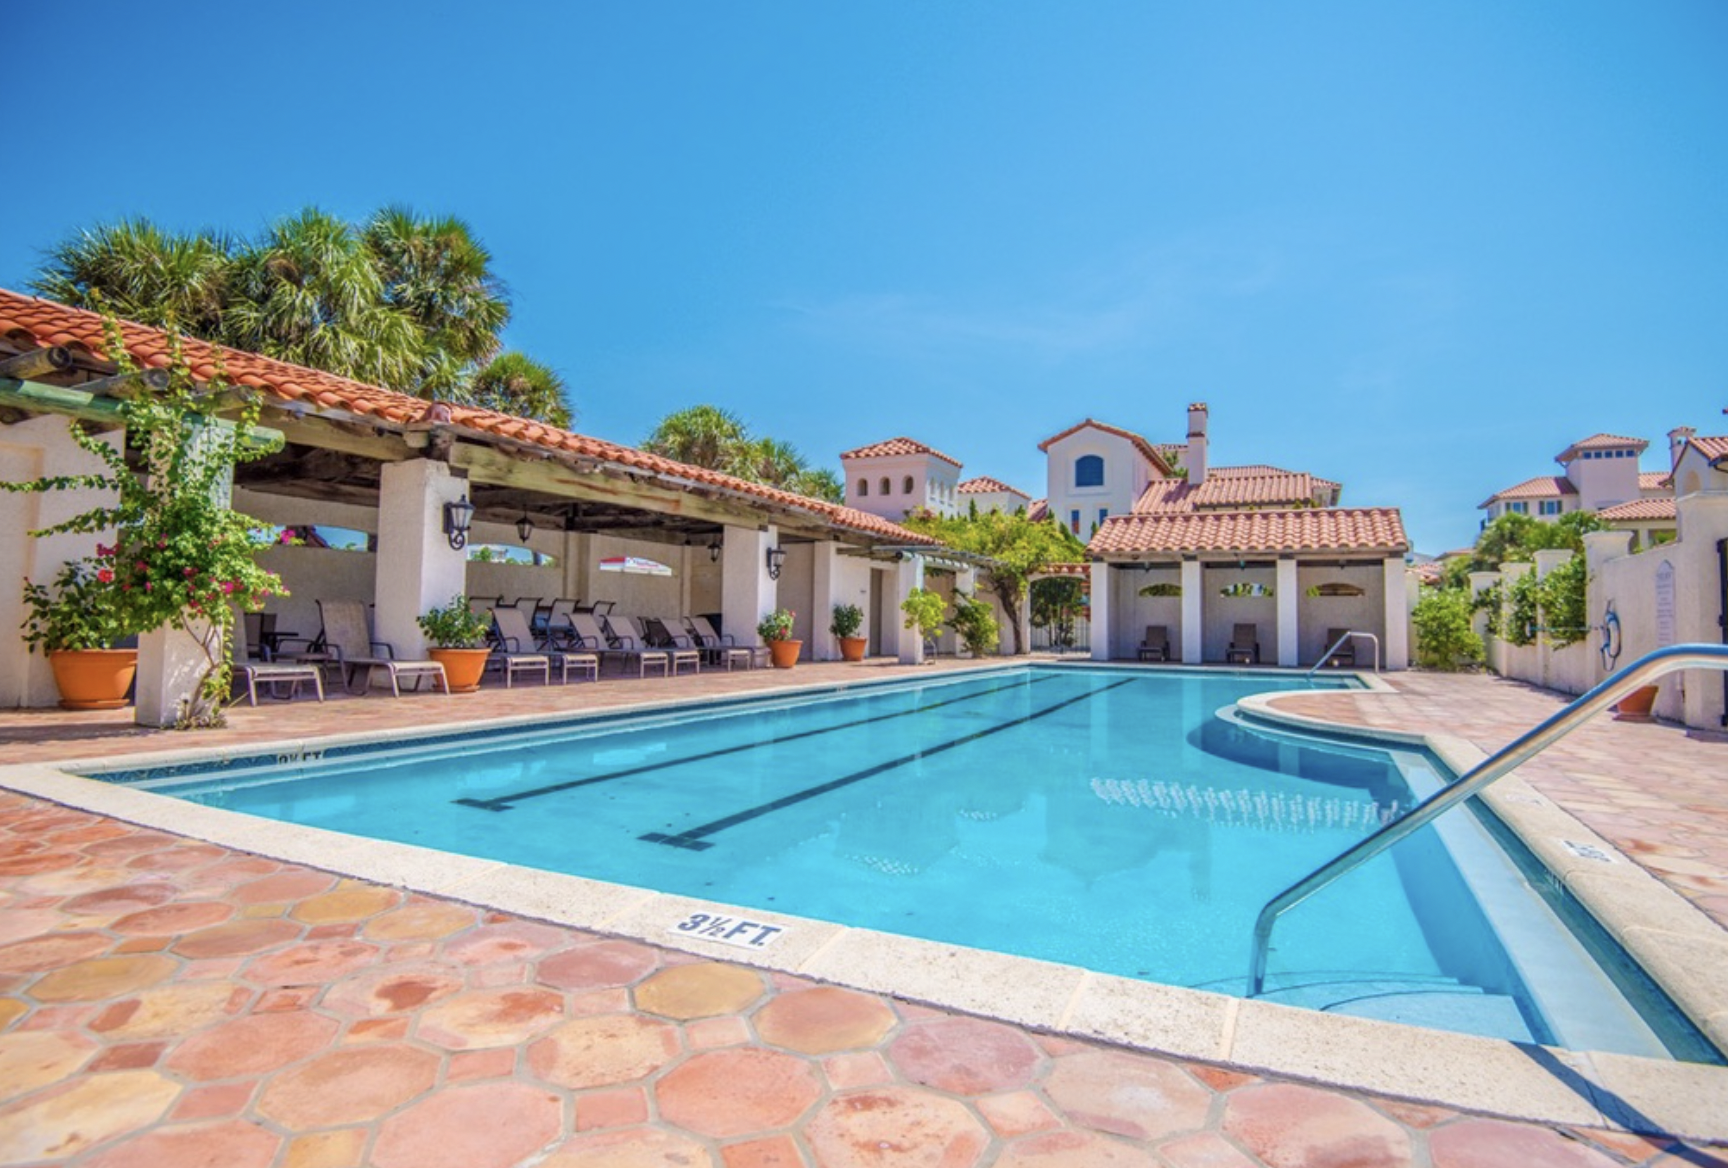 Villa Gaviota - 4 bedroom vacation rental in Santa Rosa Beach on 30A FL.